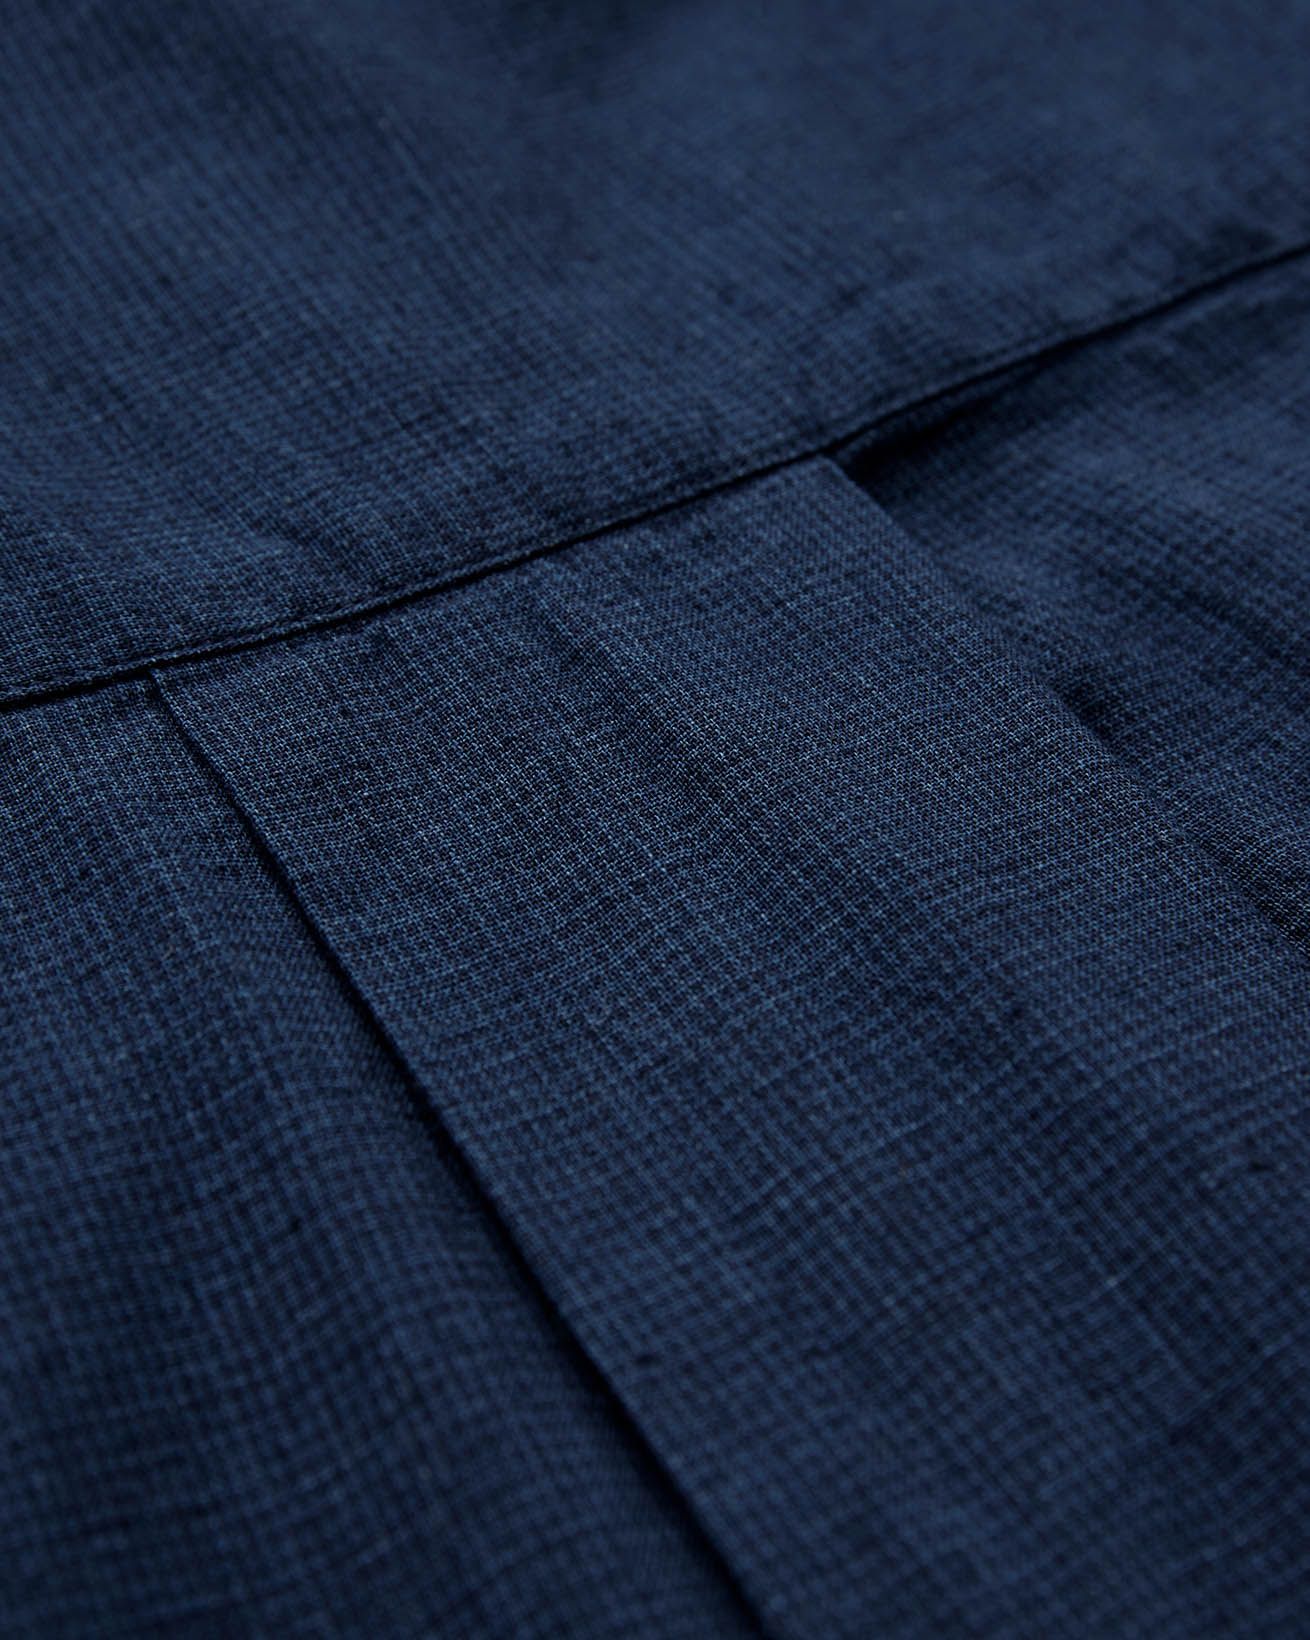 8108_linen-cotton-jumpsuit_navy_detail-4_web.jpg